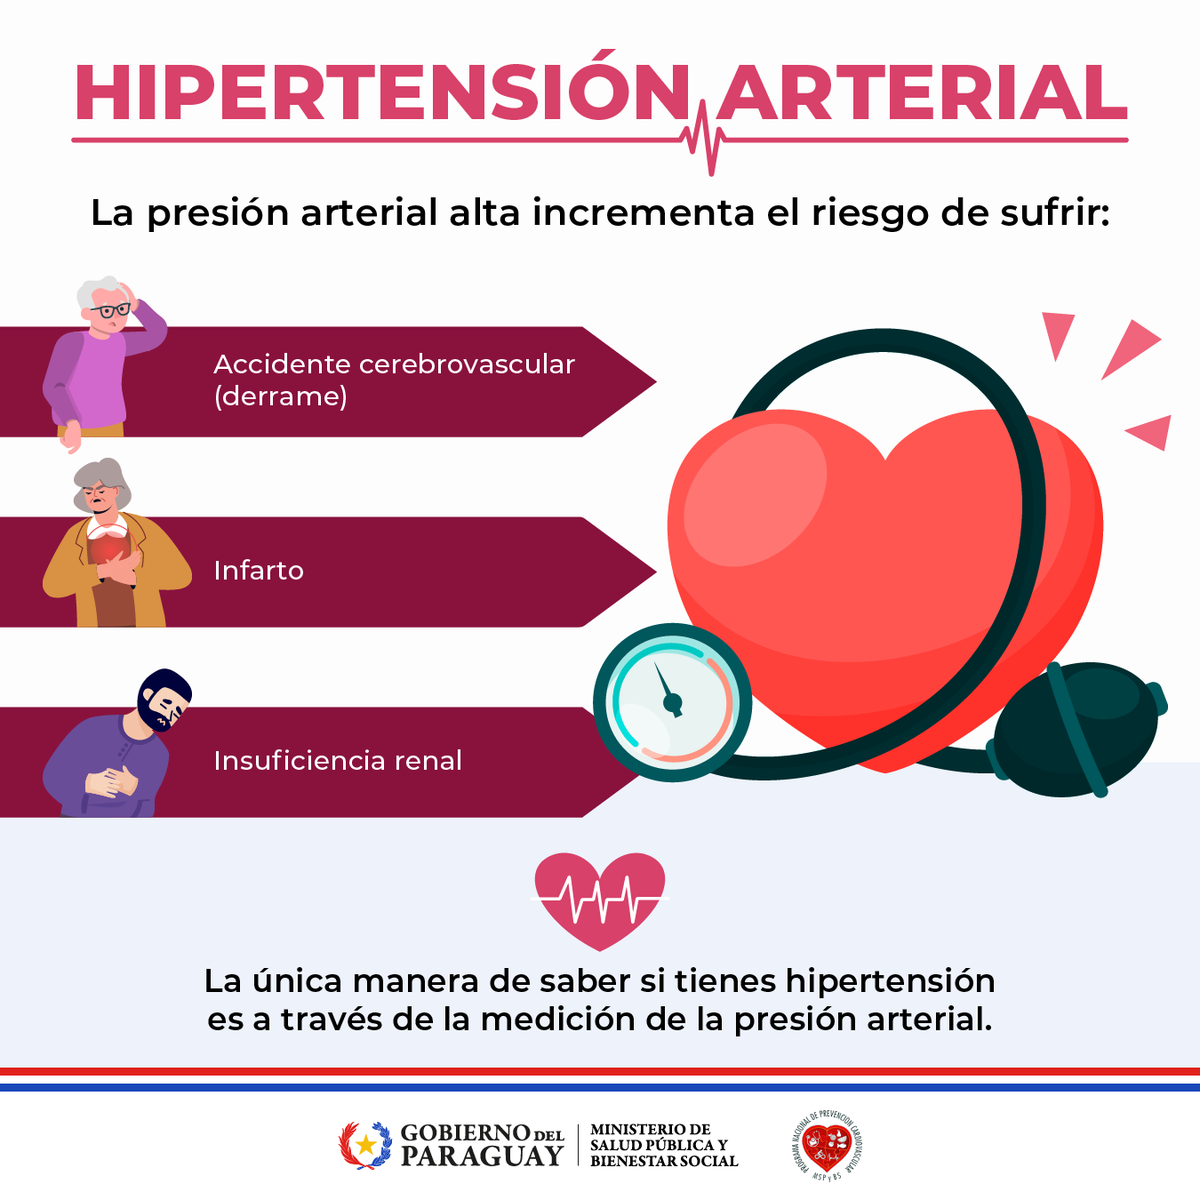 🫨 ¿Sabías que la #hipertensión puede afectar varios órganos? Cuando la presión arterial se mantiene alta durante años puede dañar arterias, corazón, cerebro, riñones y ojos. Es importante medirse la presión arterial. Con una simple toma se puede diagnosticar la hipertensión.